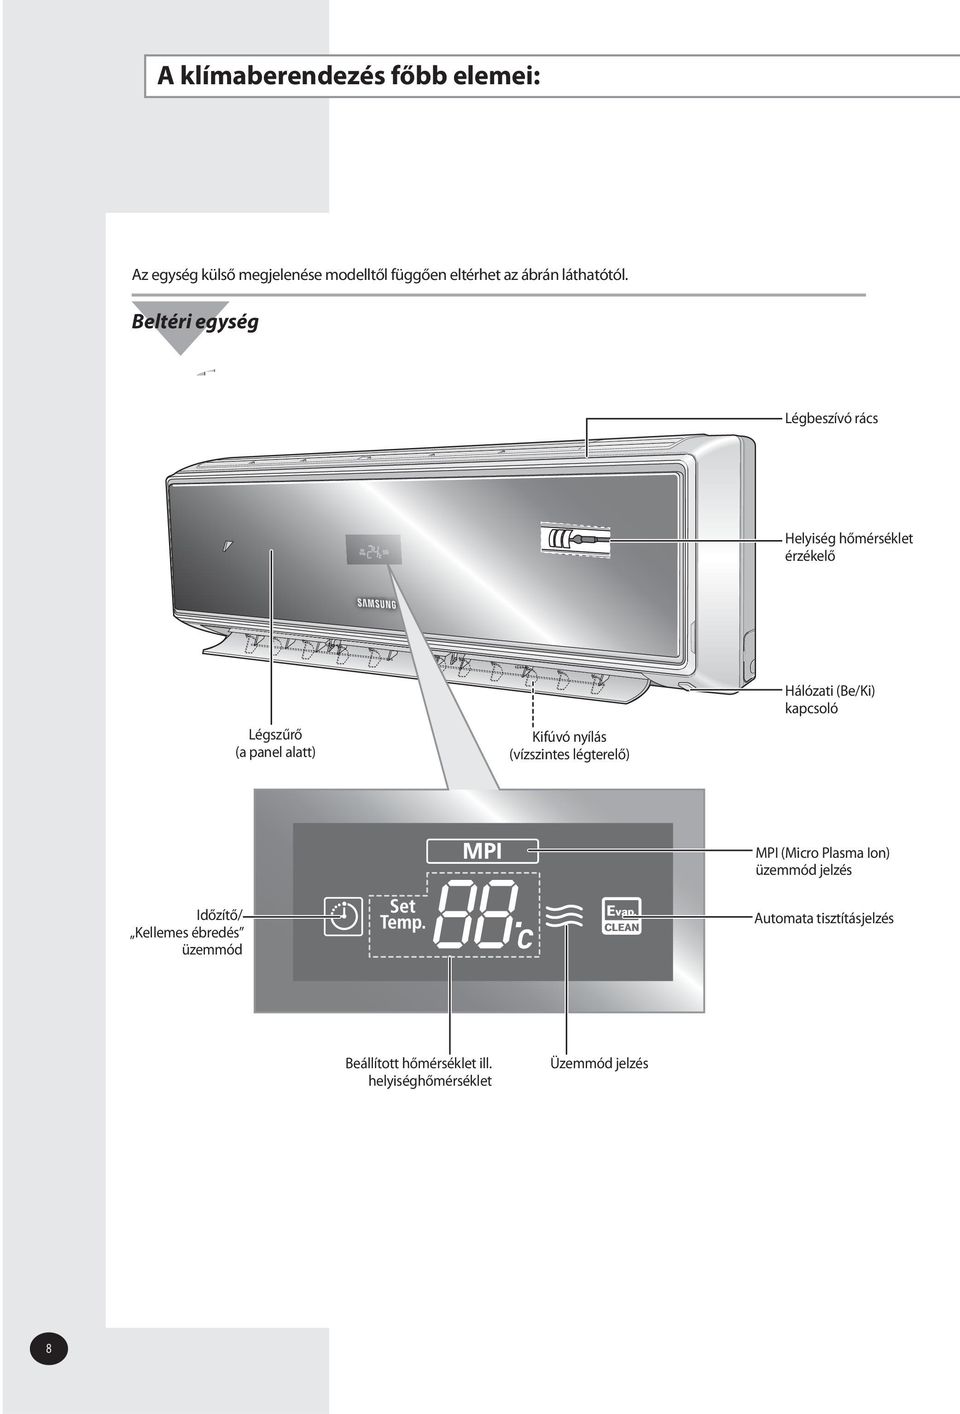 Beltéri egység Légbeszívó rács Helyiség hőmérséklet érzékelő Légszűrő (a panel alatt) Kifúvó nyílás